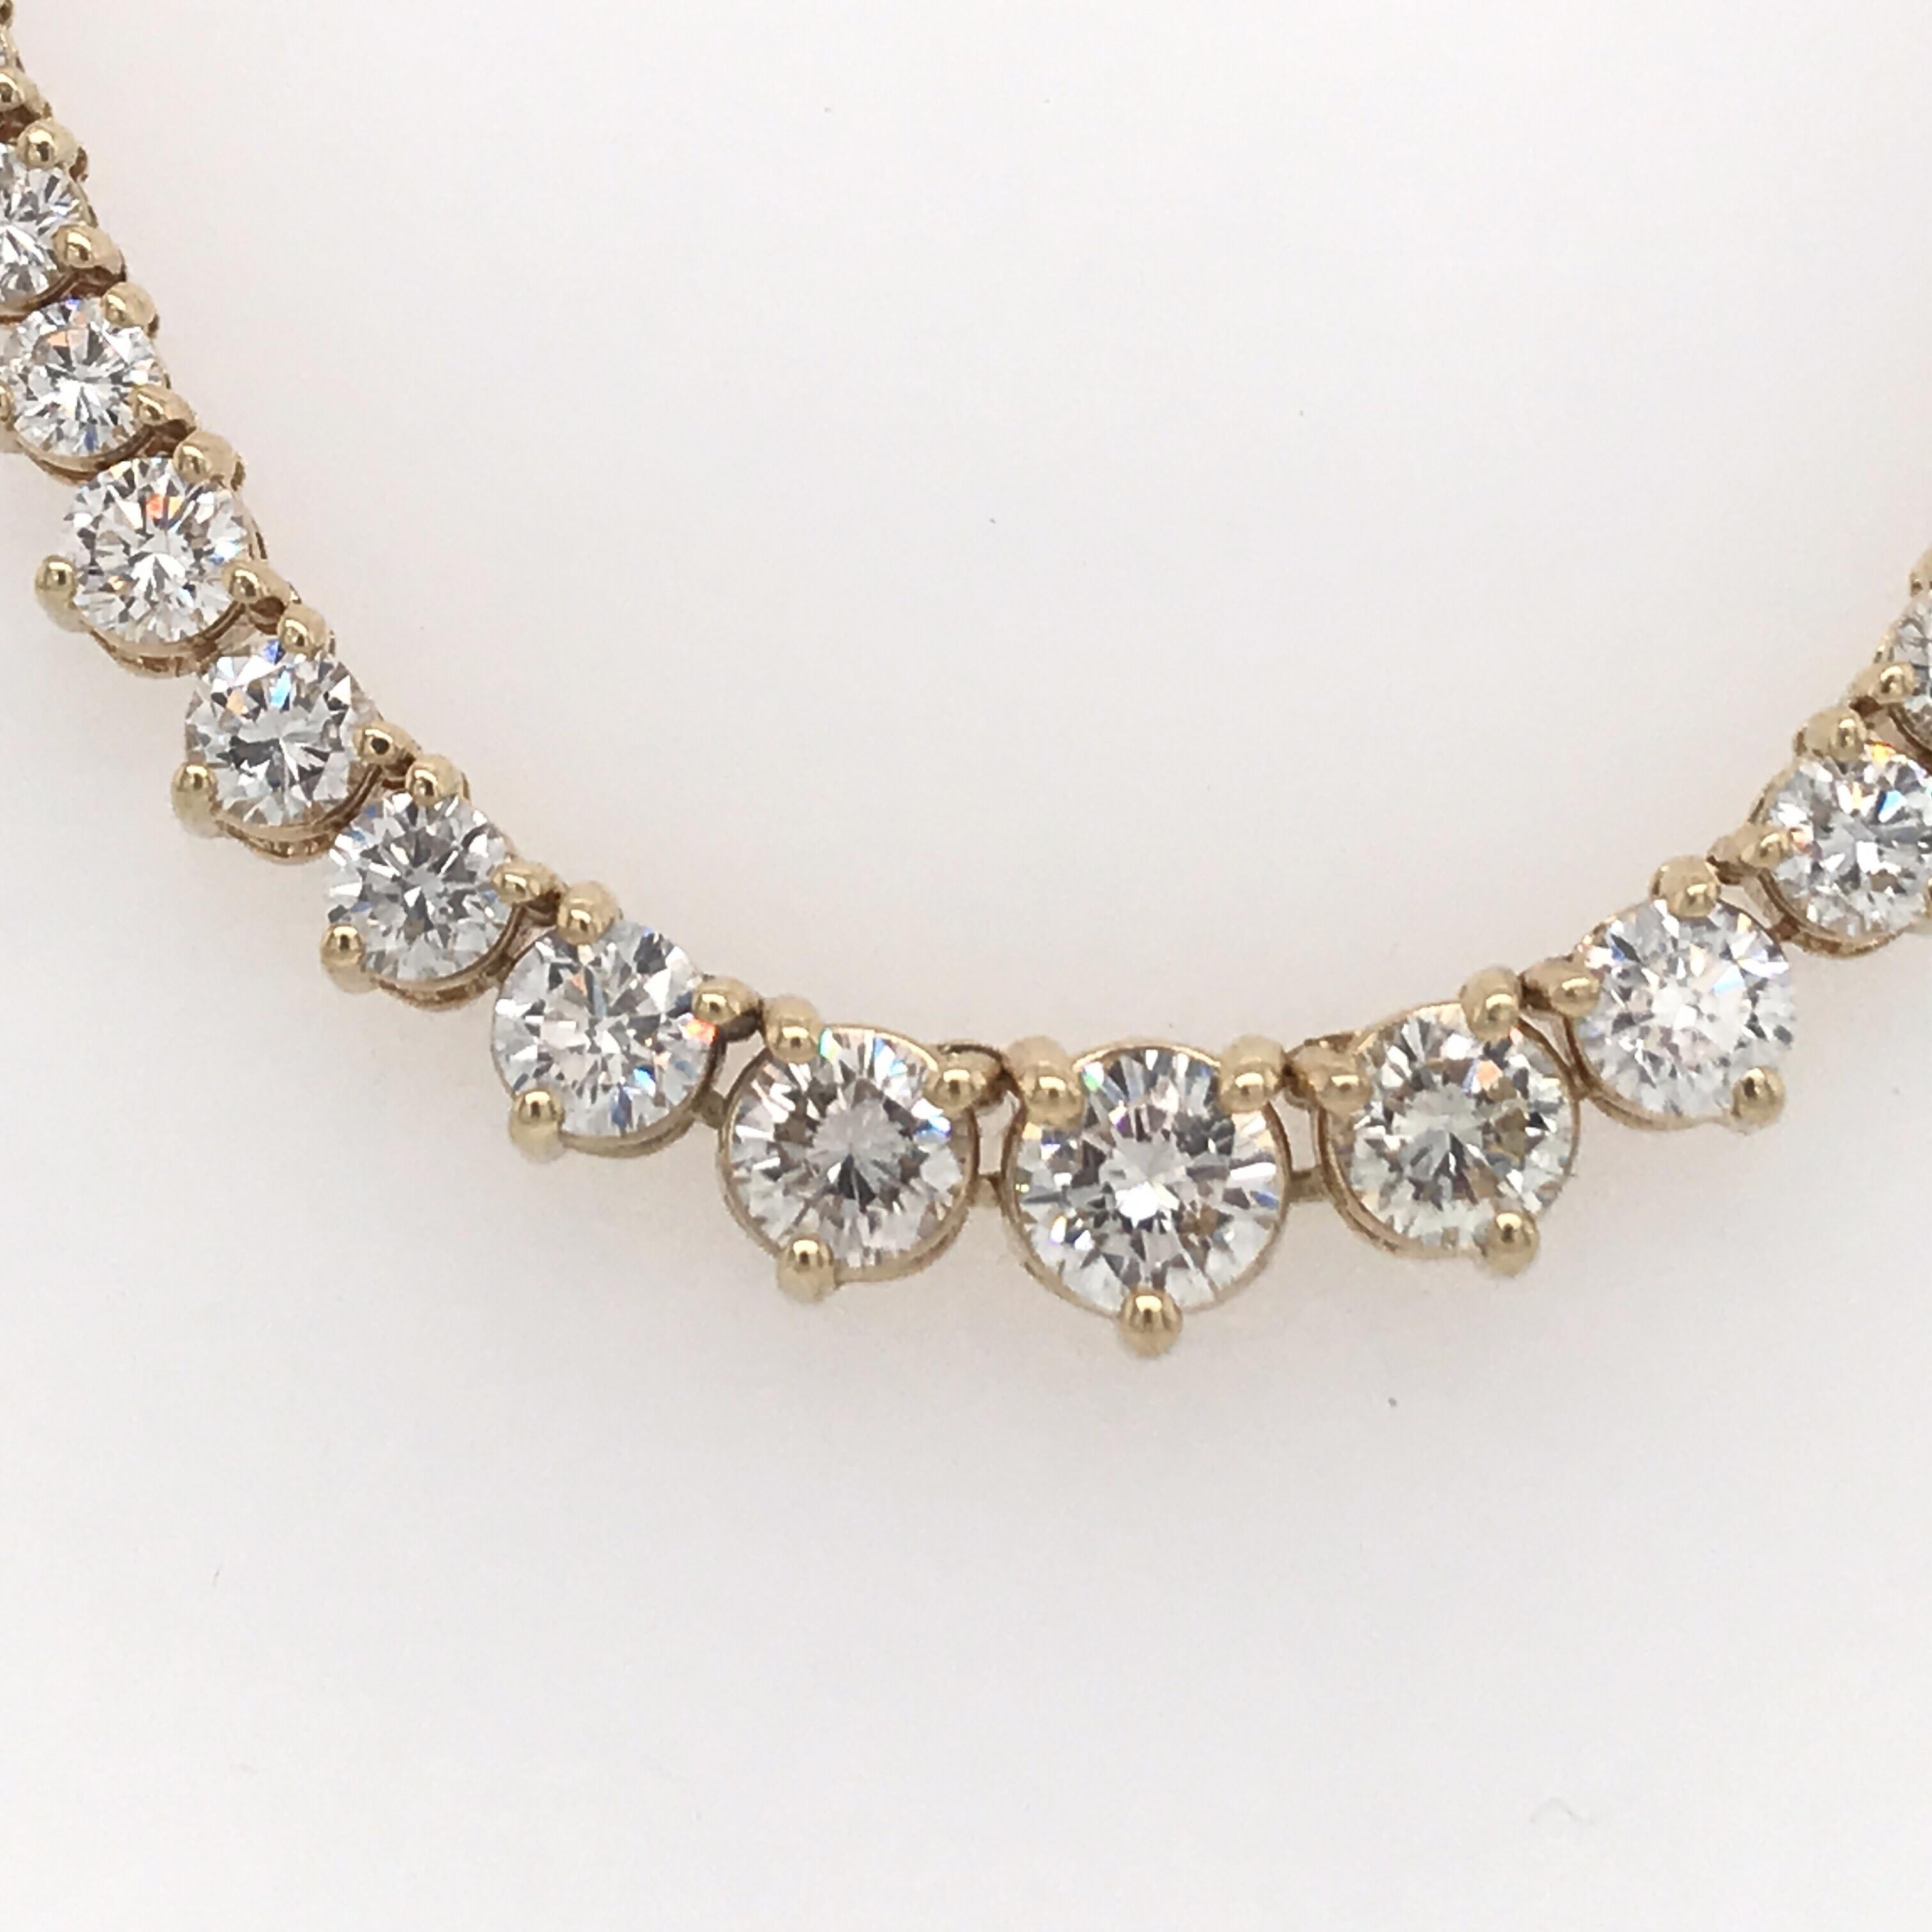 Abgestufte Diamant-Riviere-Halskette mit 161 runden Brillanten von 8 Karat aus 14 Karat Gelbgold.
Farbe G-H
Klarheit SI

Wir können jede beliebige Größe anfertigen.